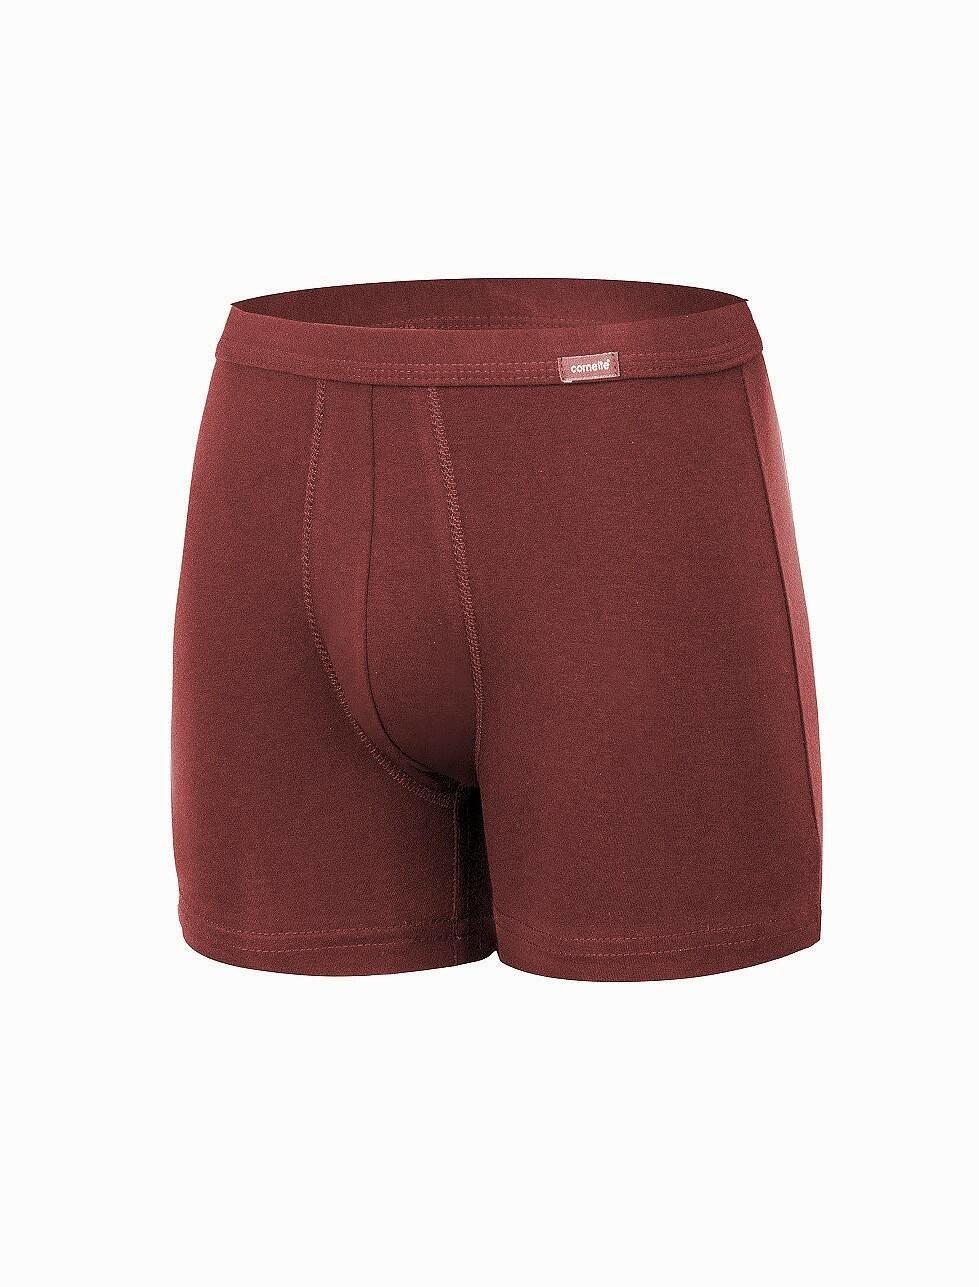 Boxer shorts Cornette Authentic Perfect 092 3XL-5XL claret 092